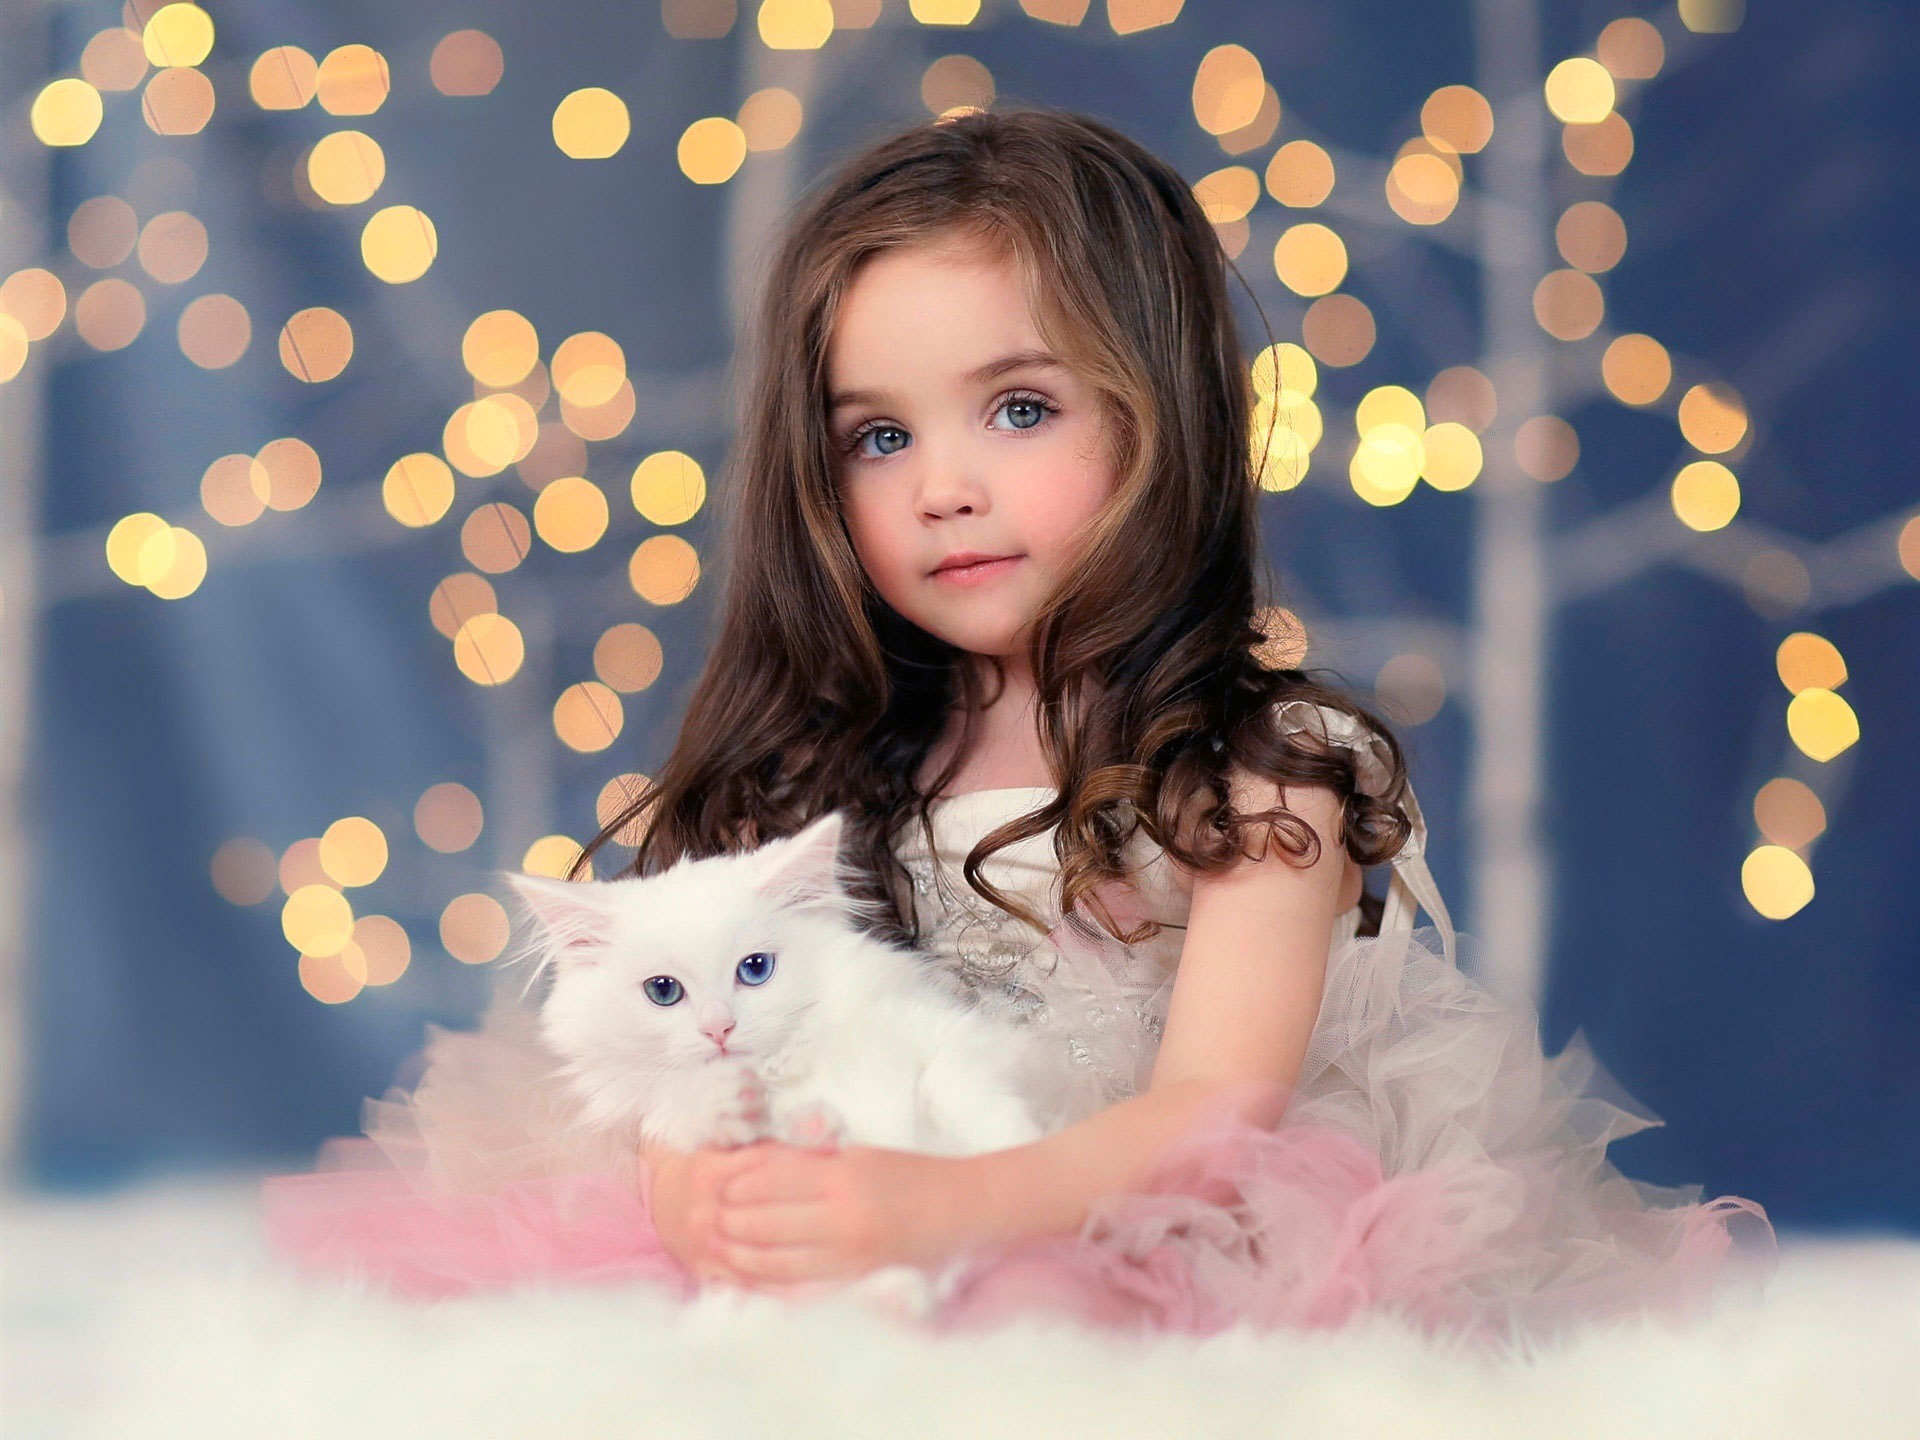 Cute girl wallpaper, white kitten, lights, bokeh